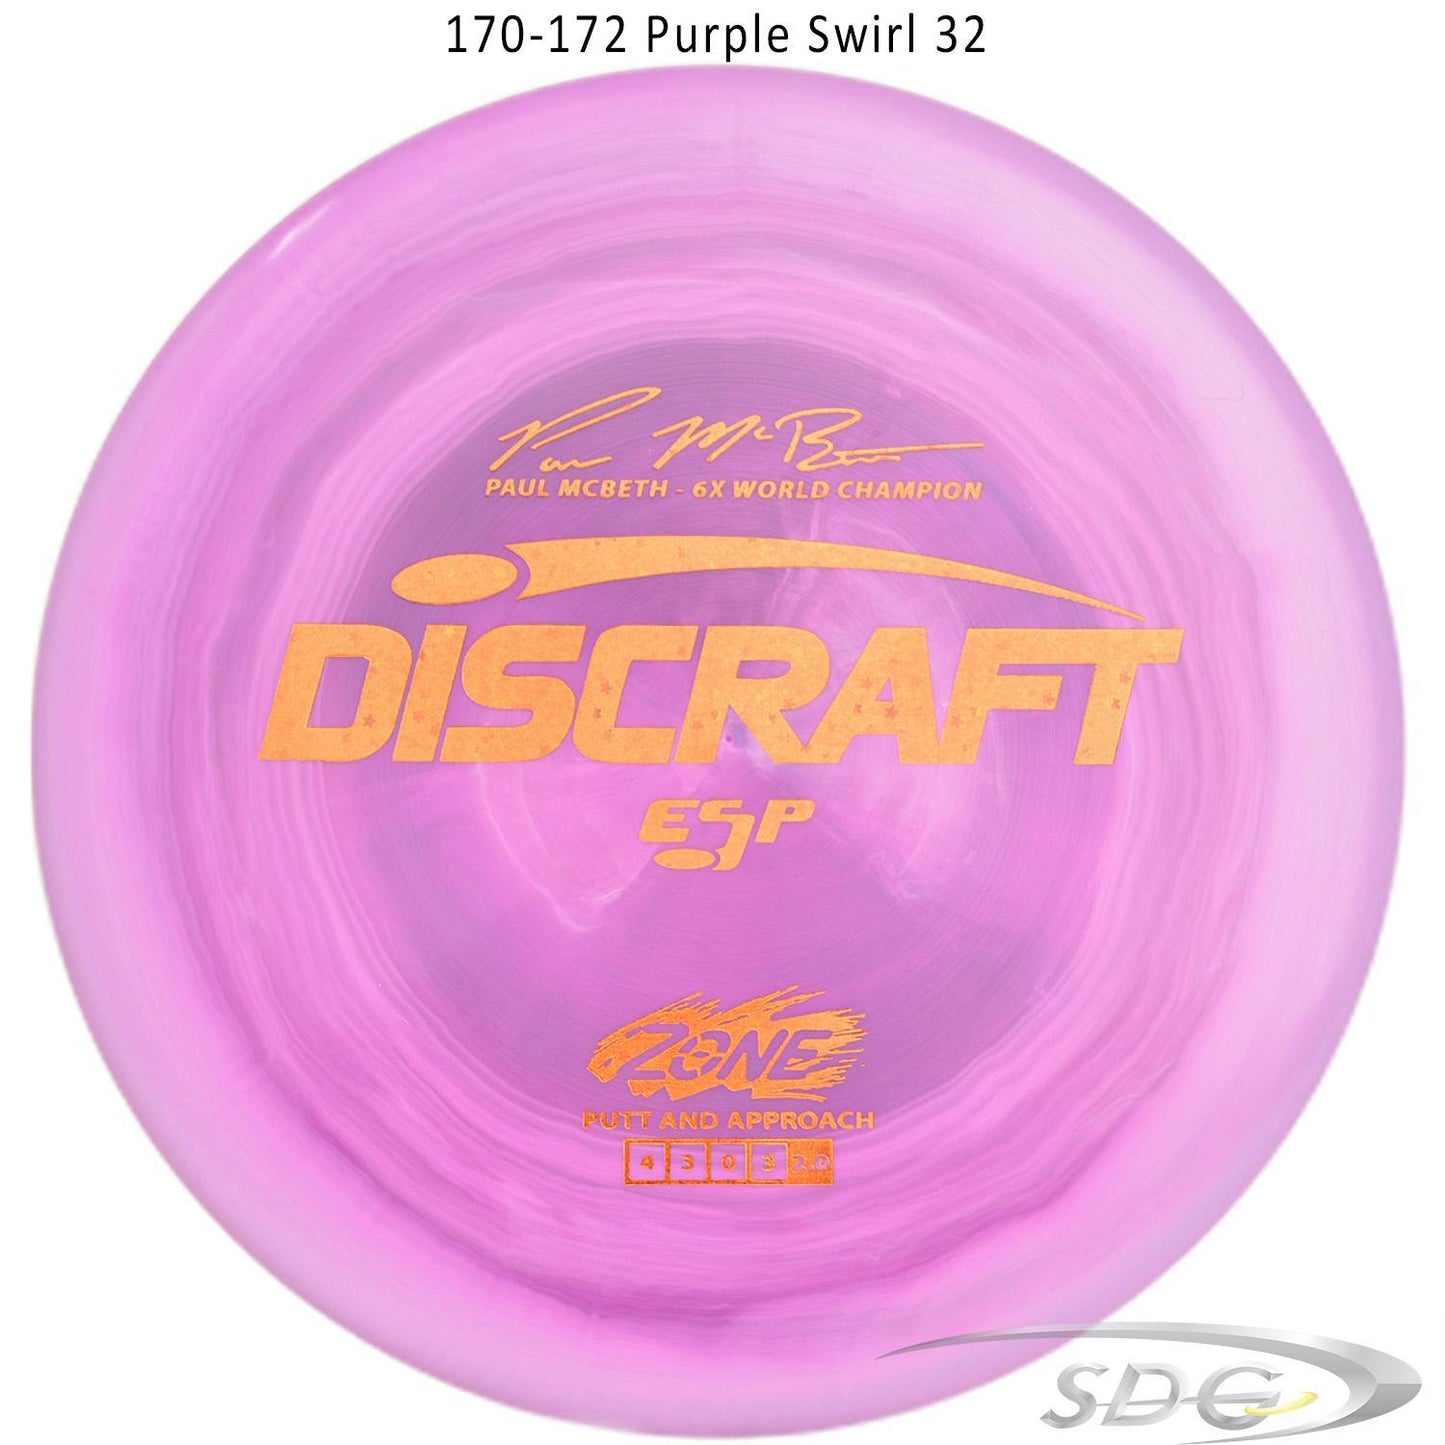 discraft-esp-zone-6x-paul-mcbeth-signature-series-disc-golf-putter-172-170-weights 170-172 Purple Swirl 32 